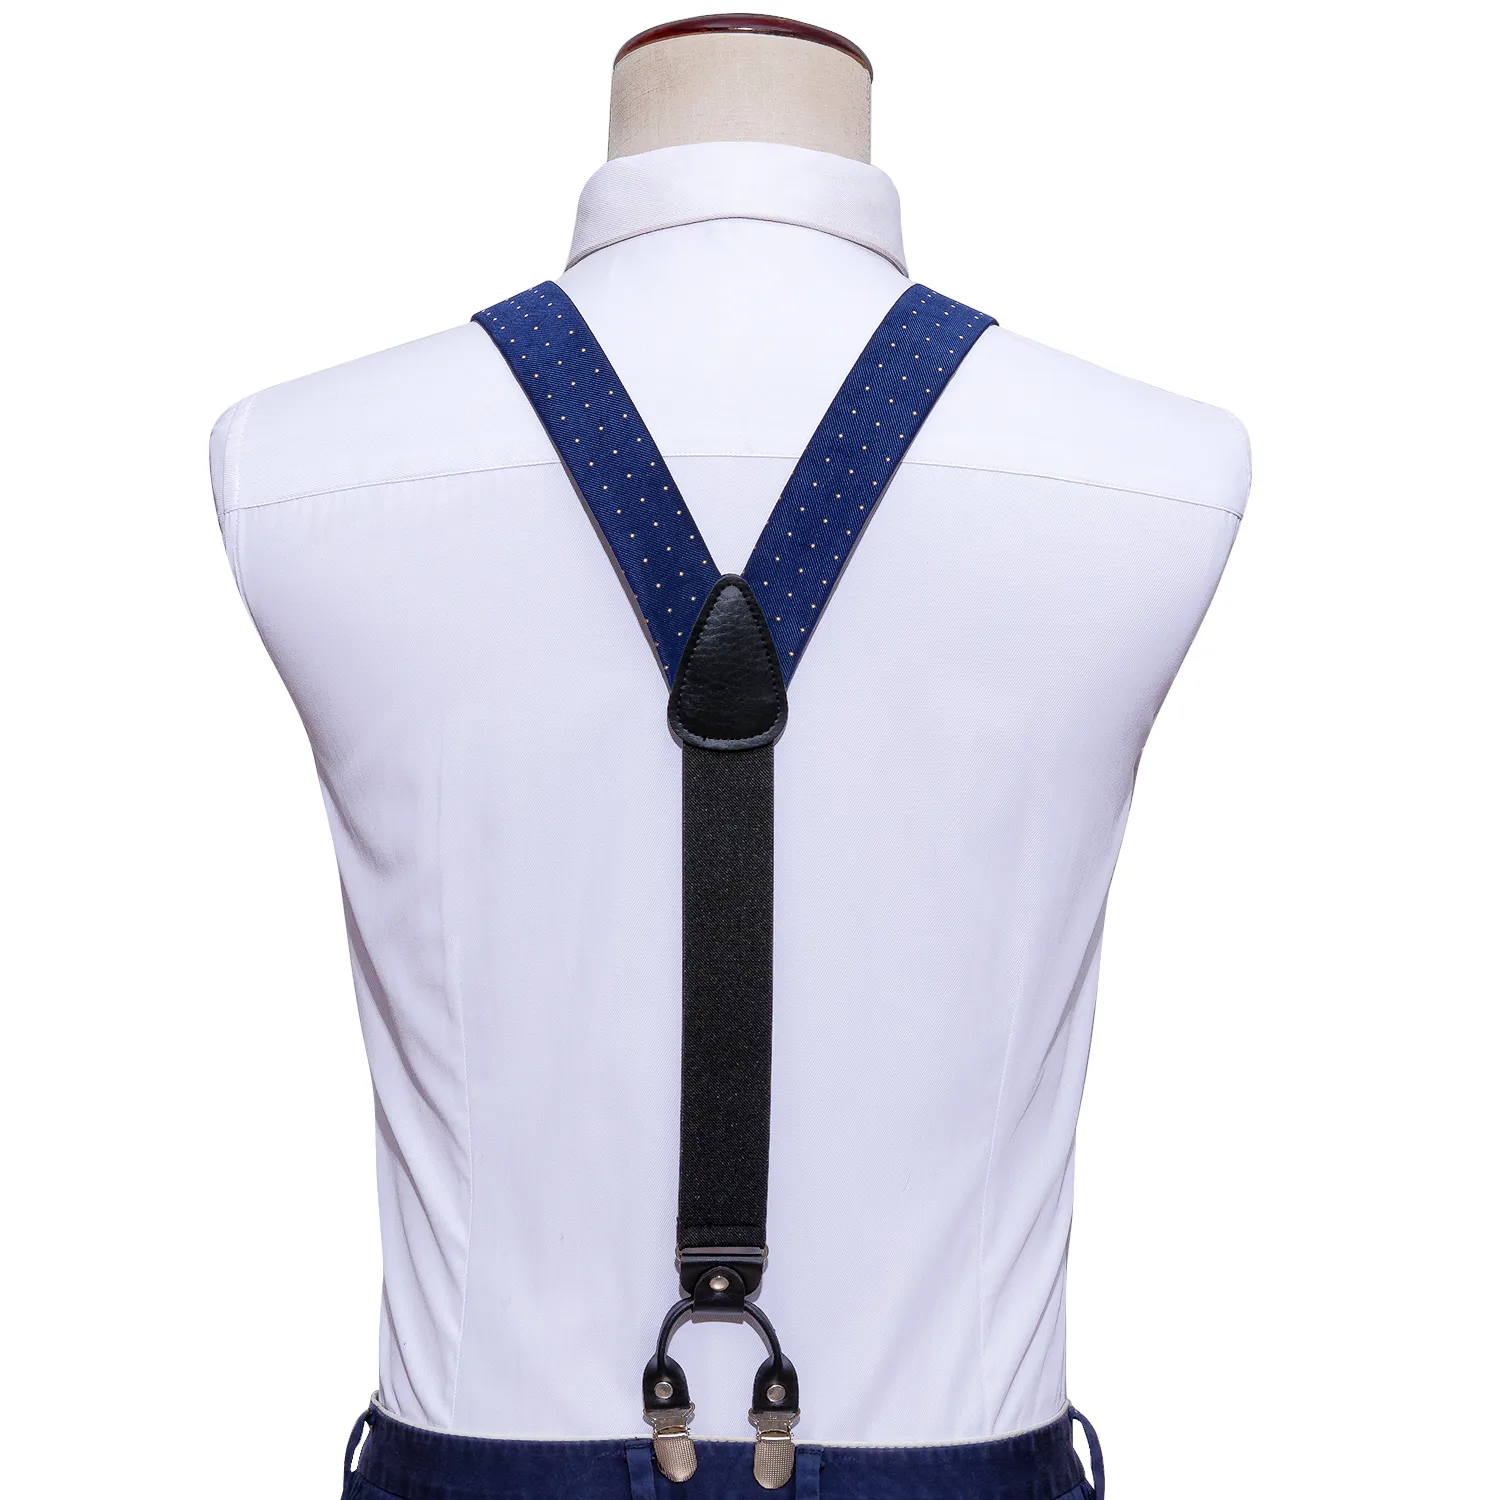 Blue Fashion Dot regolabile bretelle di seta yback set cravatta uomini uomini notti yshape 6 clip bretelle Barrywang2283046